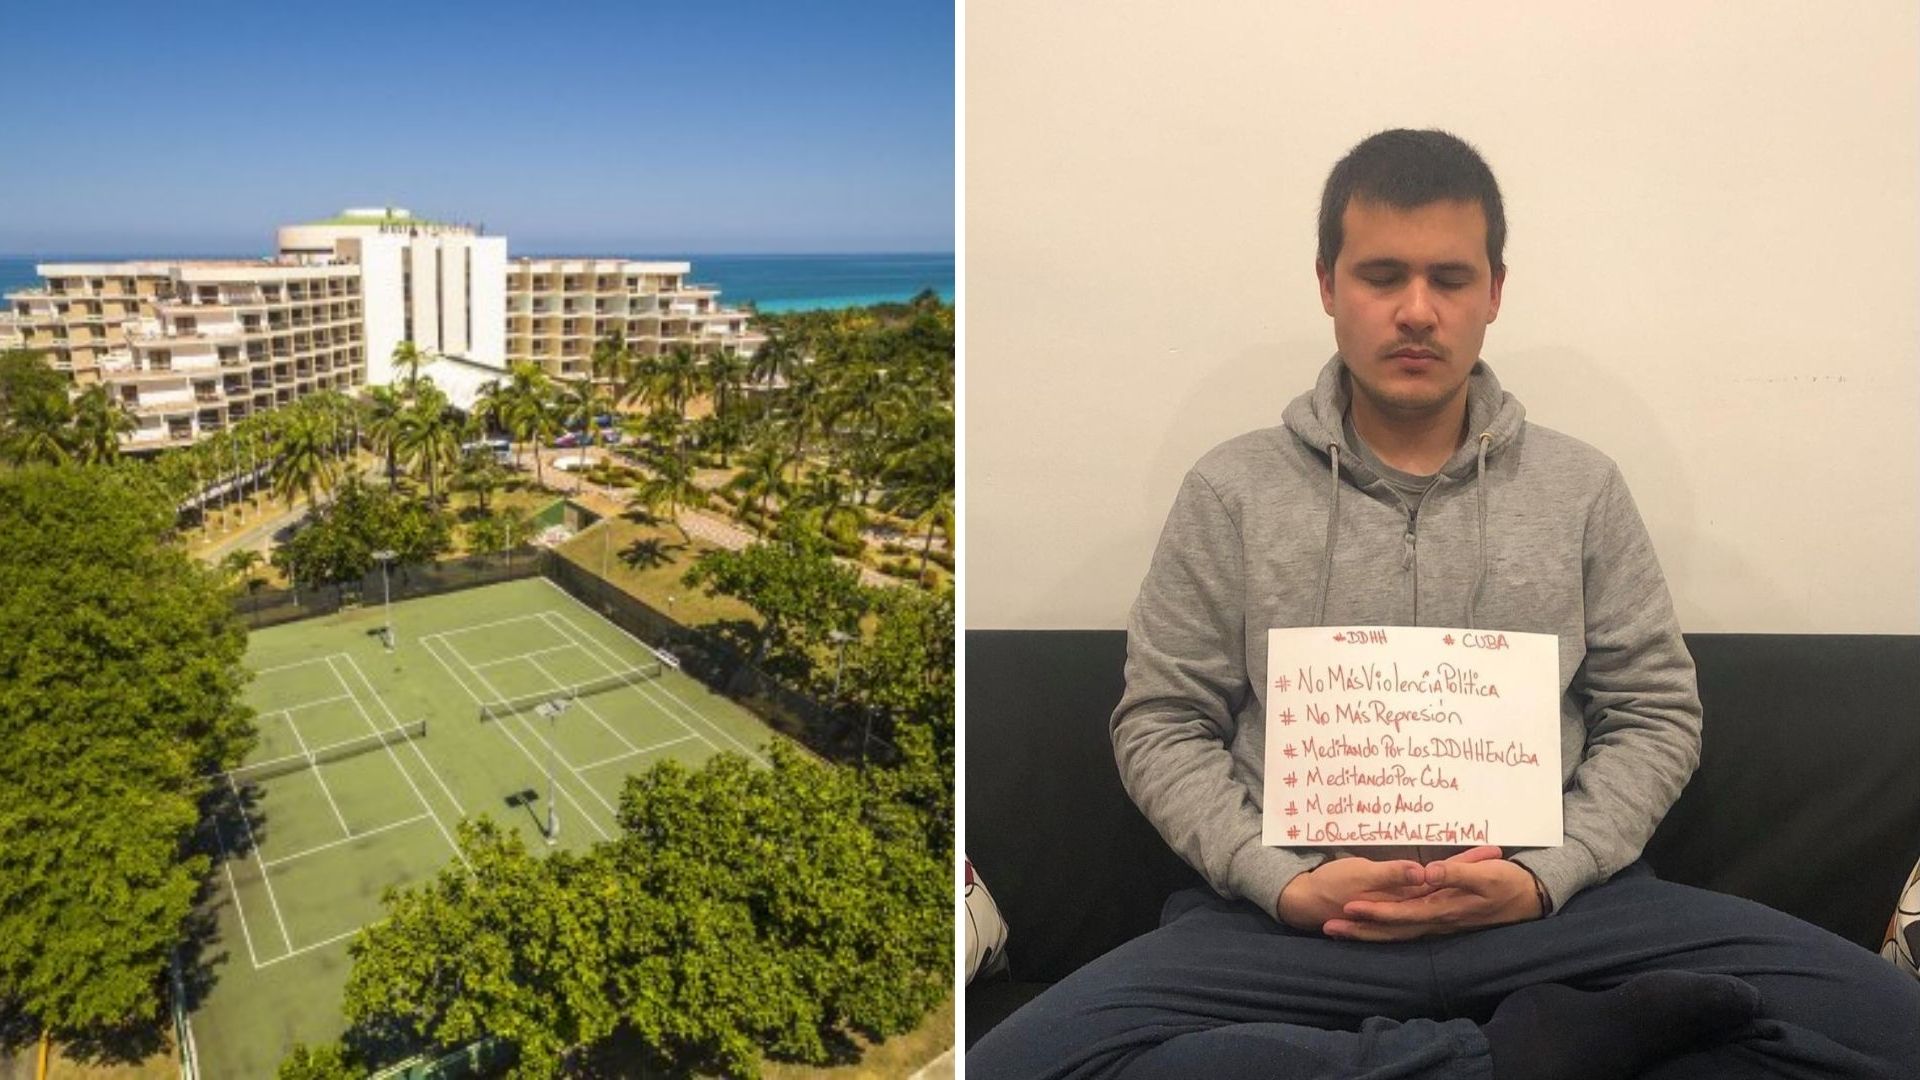 Gaitán Garmendía, de visita en la Isla, denunció que la cadena de hoteles española "colabora con la represión y el acoso en Cuba"